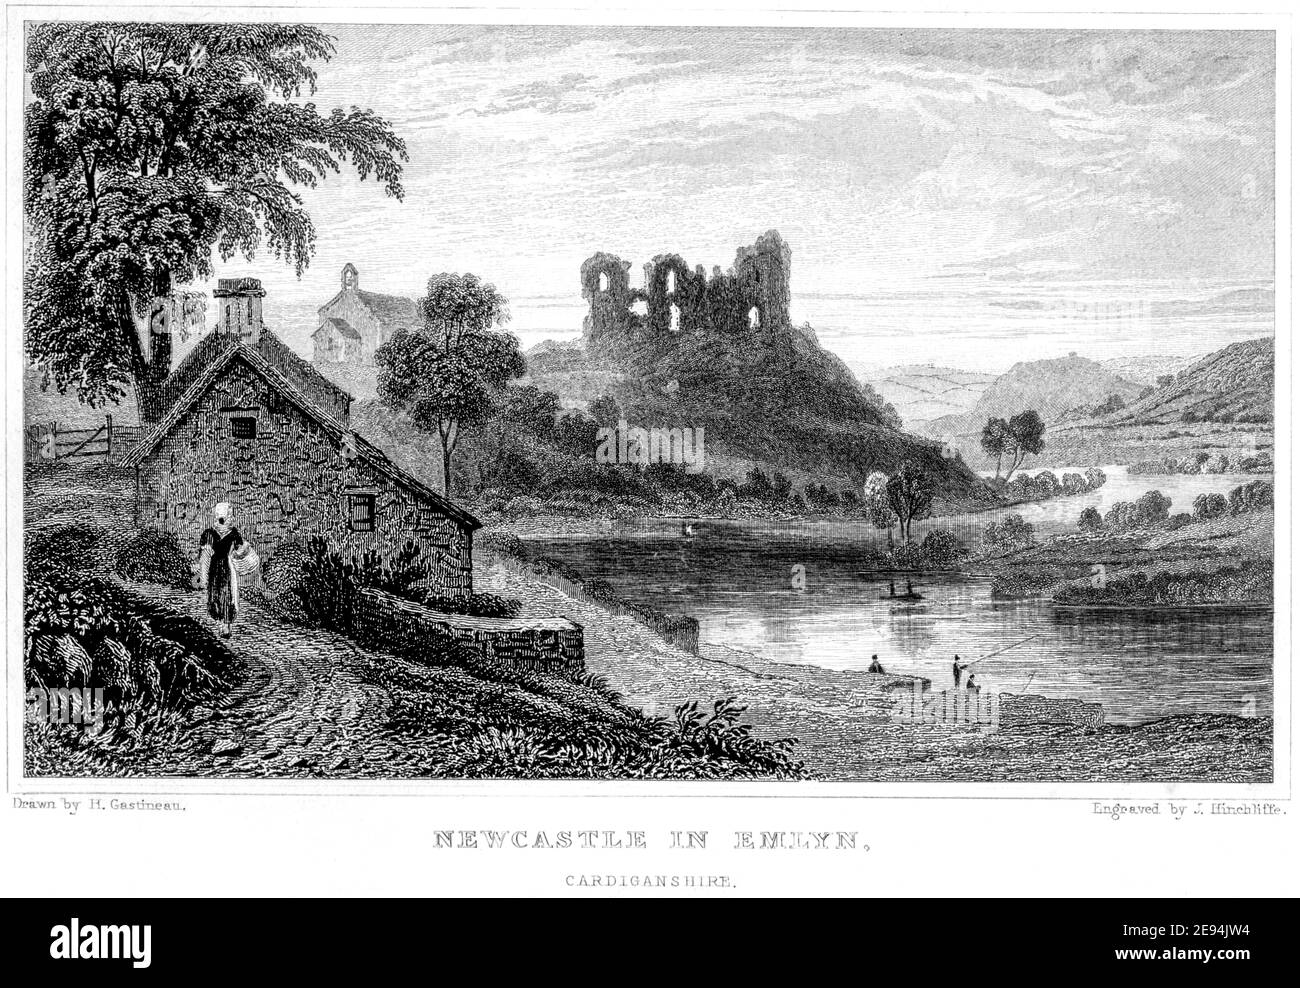 Ein Stich von Newcastle in Emlyn, Cardiganshire, gescannt in hoher Auflösung von einem Buch im Jahr 1854 veröffentlicht. Für urheberrechtlich frei gehalten. Stockfoto